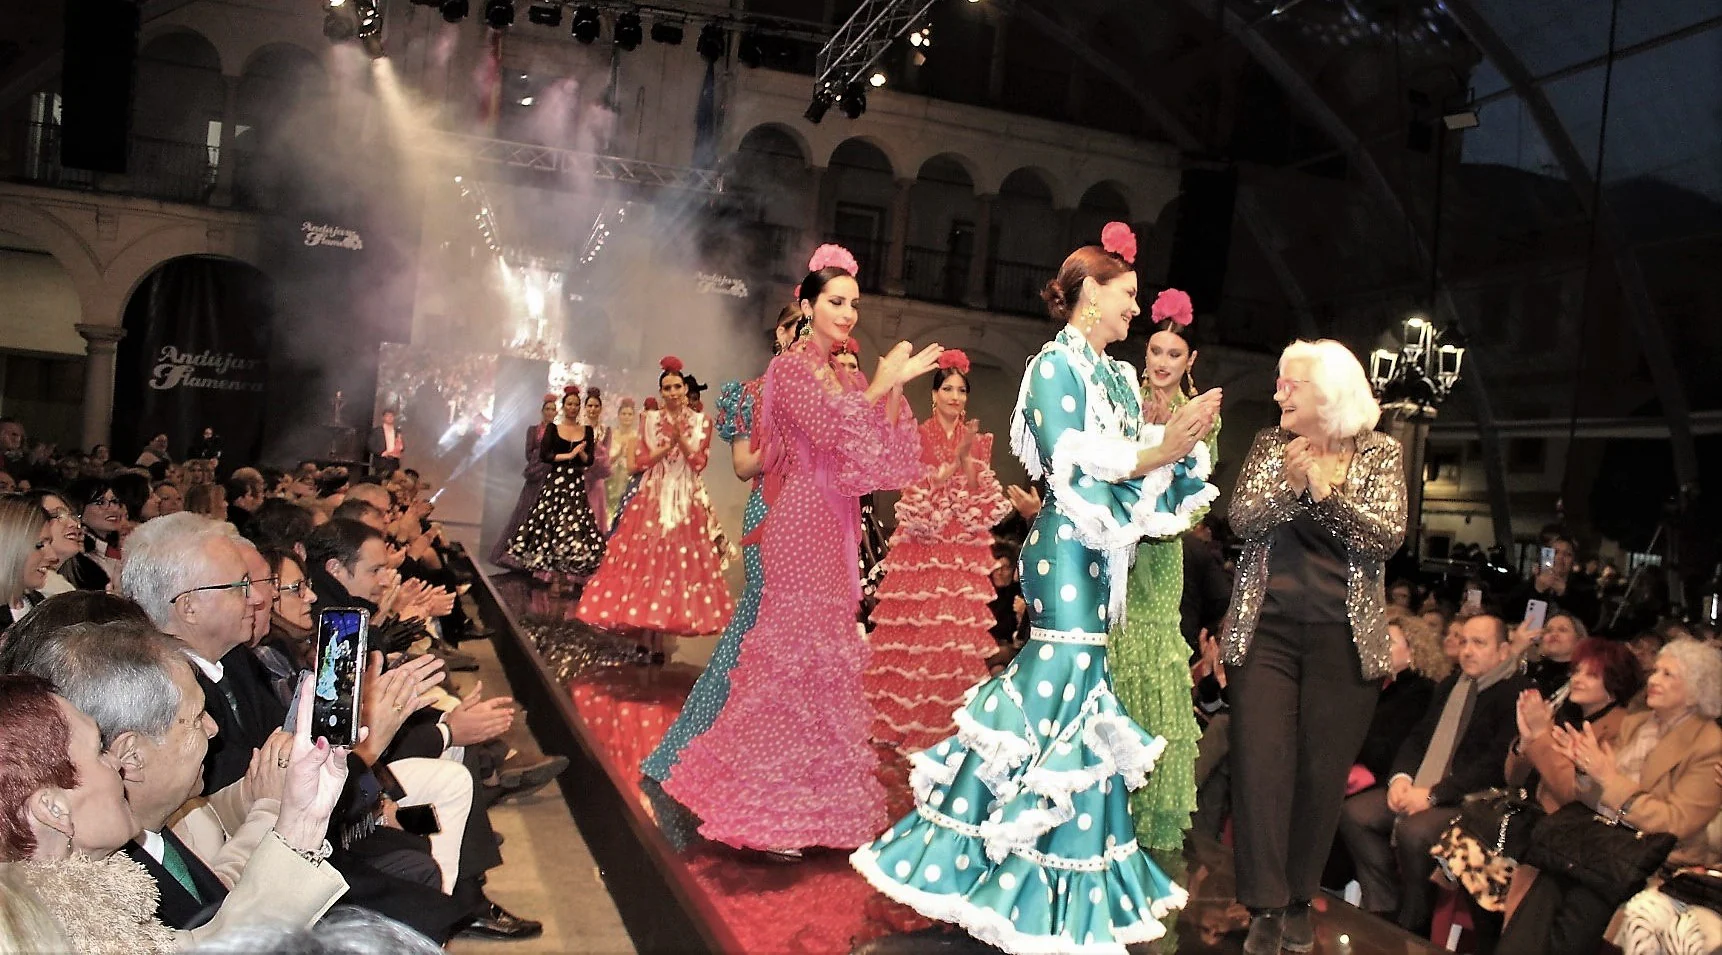 La actual normalidad reactiva la ventas en la moda flamenca